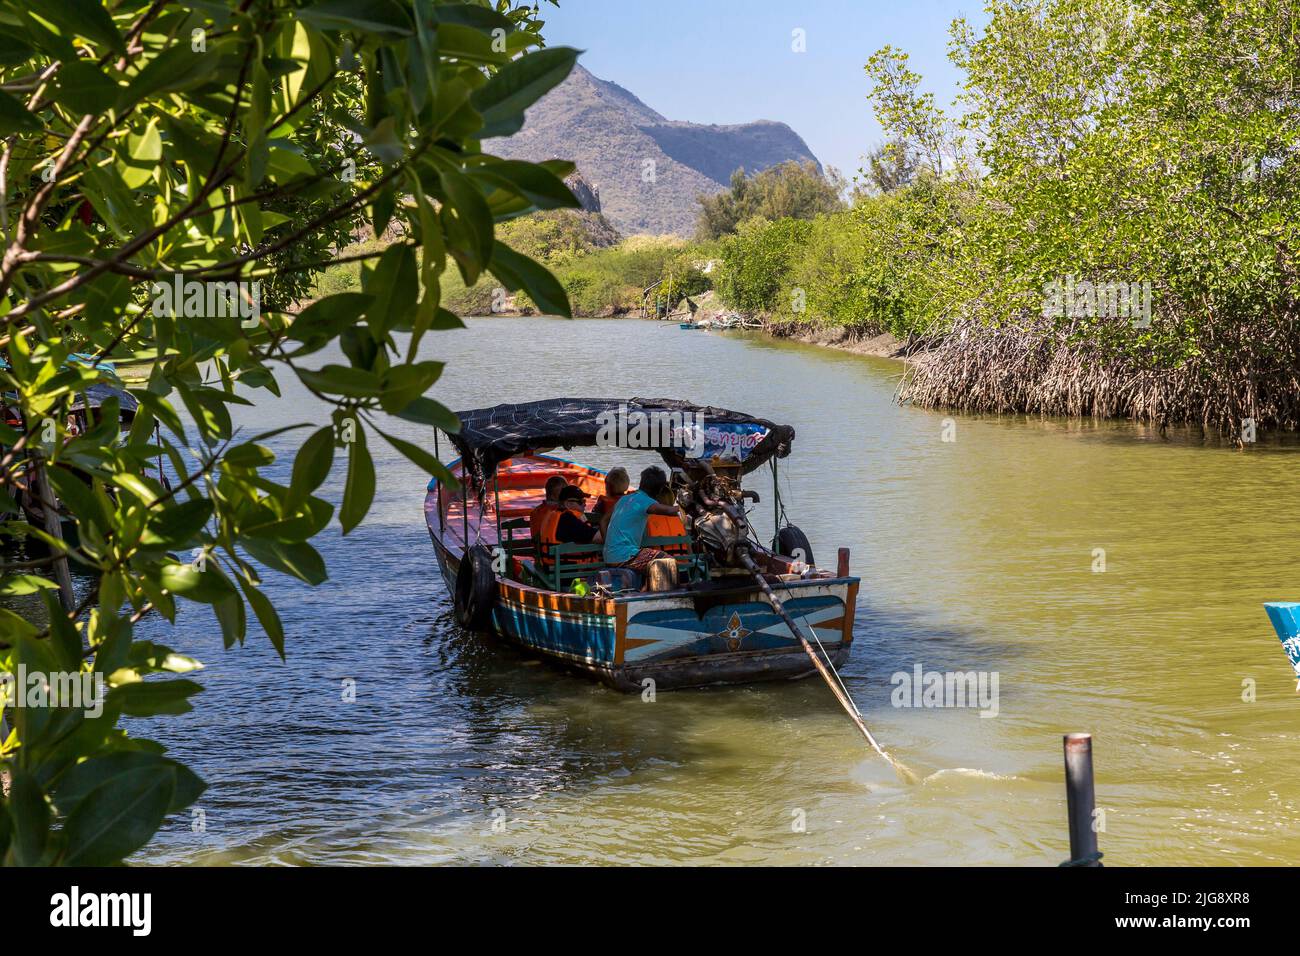 Bateau avec touristes, fleuve Khao Daeng, parc national Khao Sam Roi Yot, province de Prachuap Khiri Khan, Thaïlande, Asie Banque D'Images